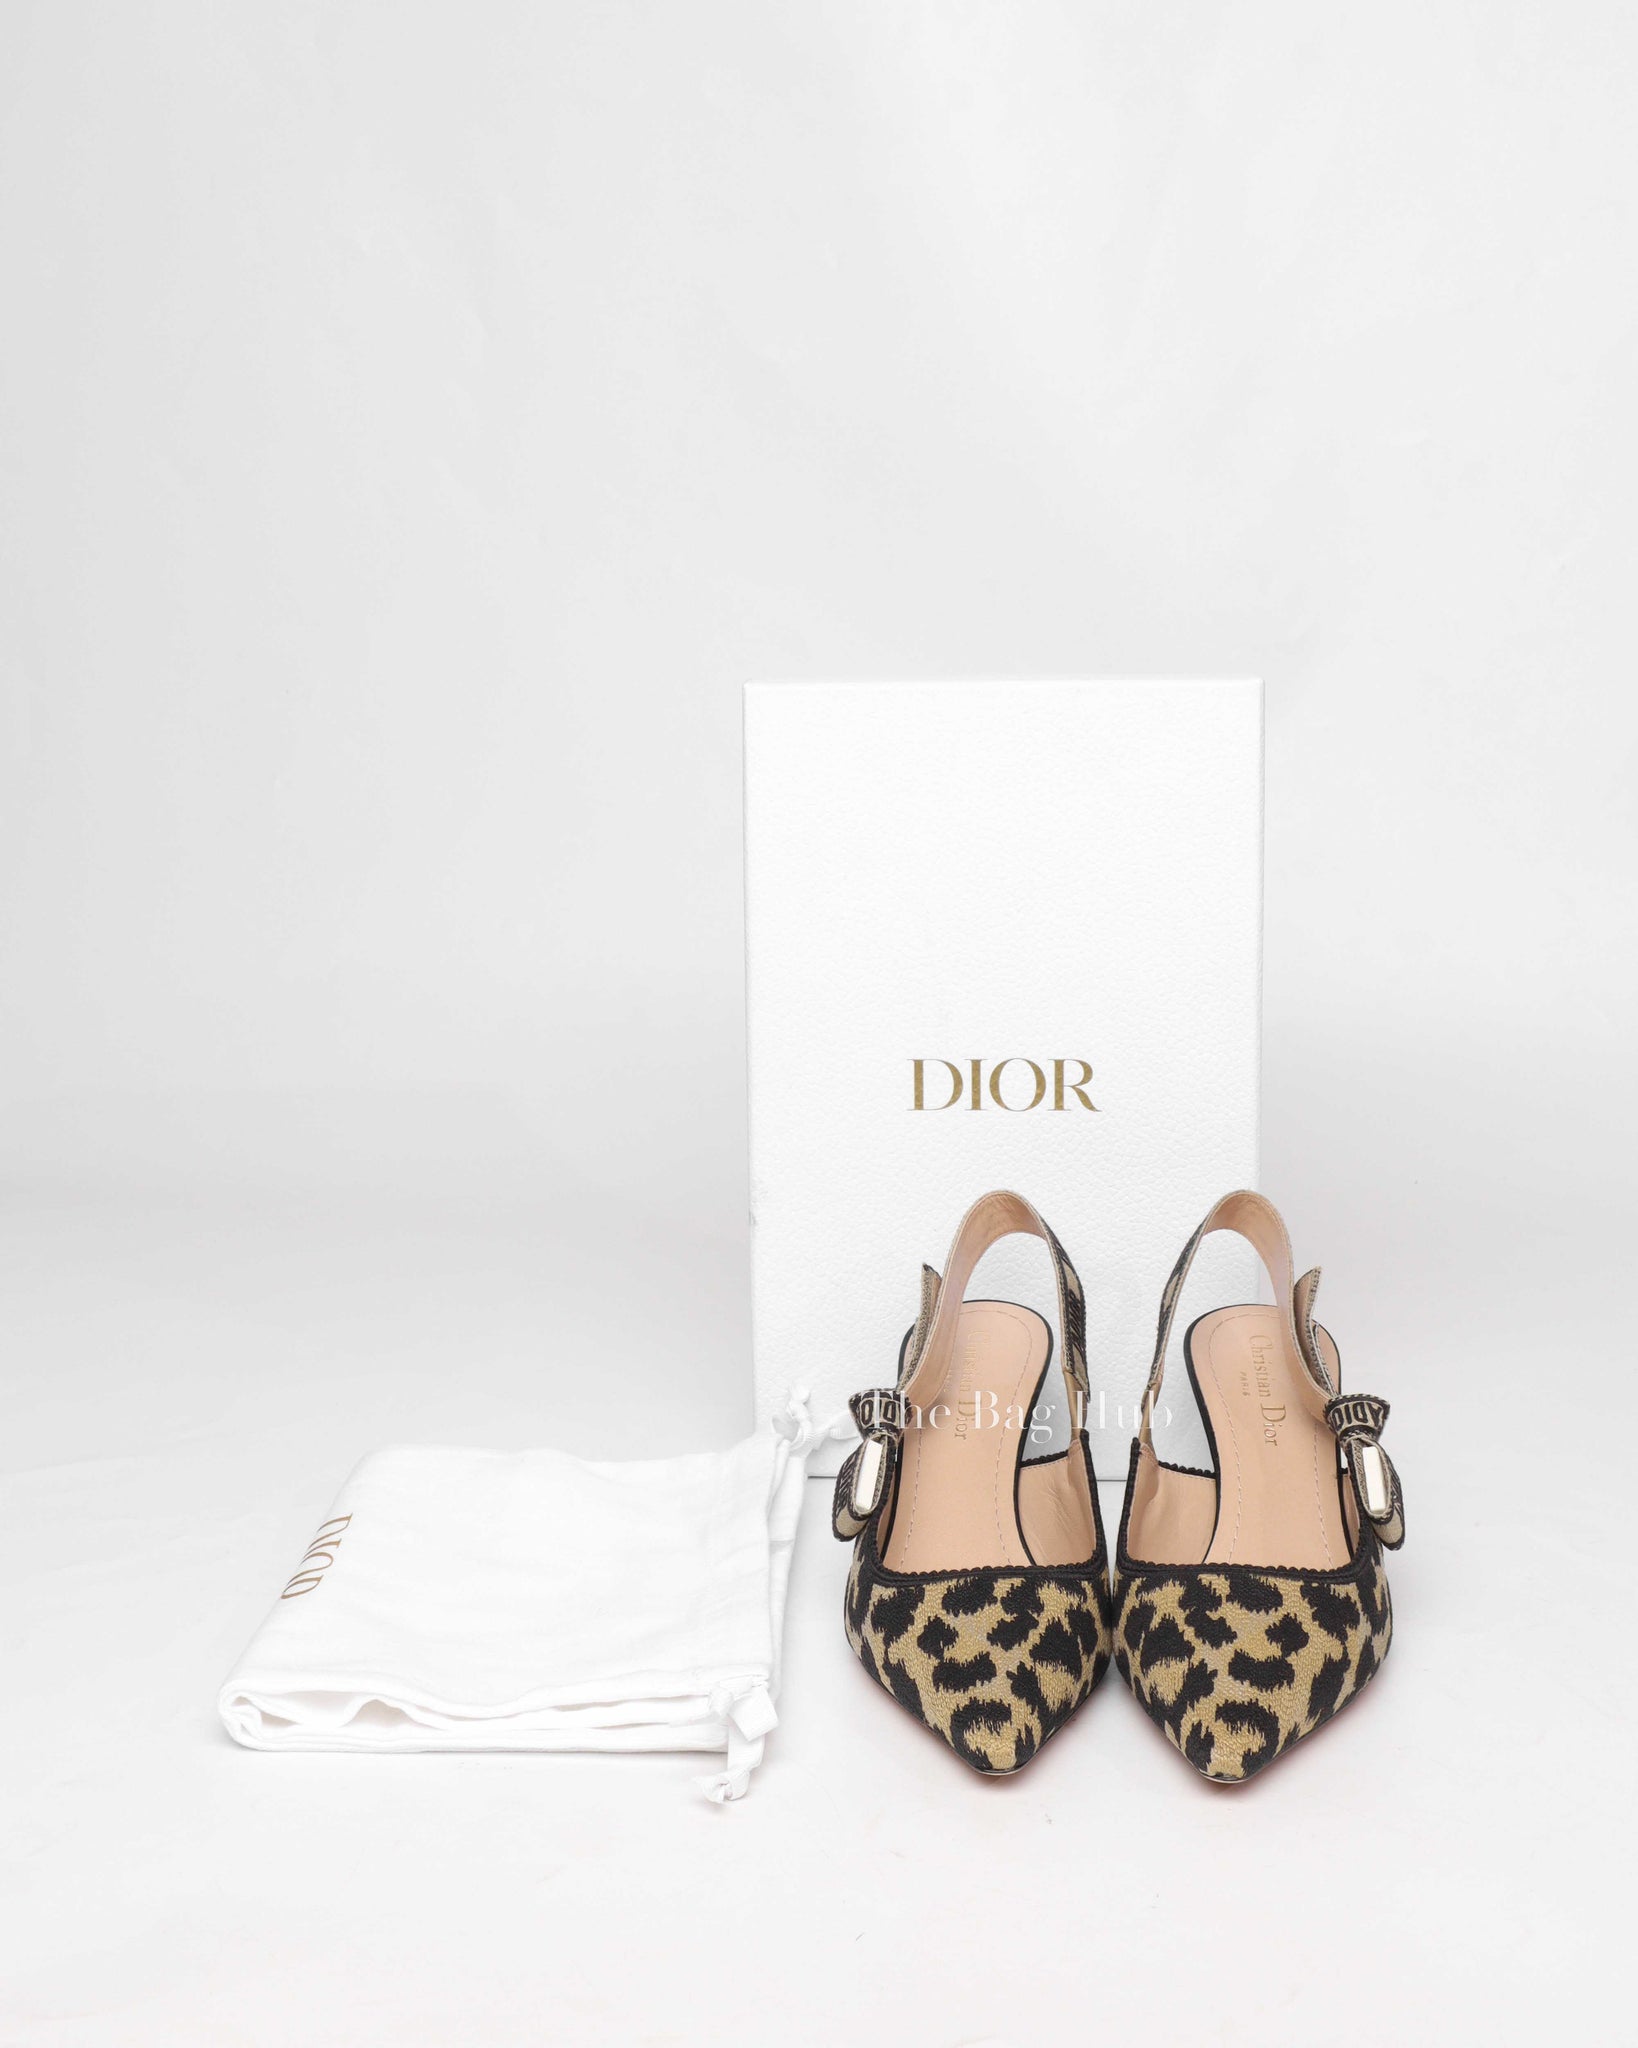 Dior Leopard Embroidered J'Adior Slingback Pumps Size 38.5-9